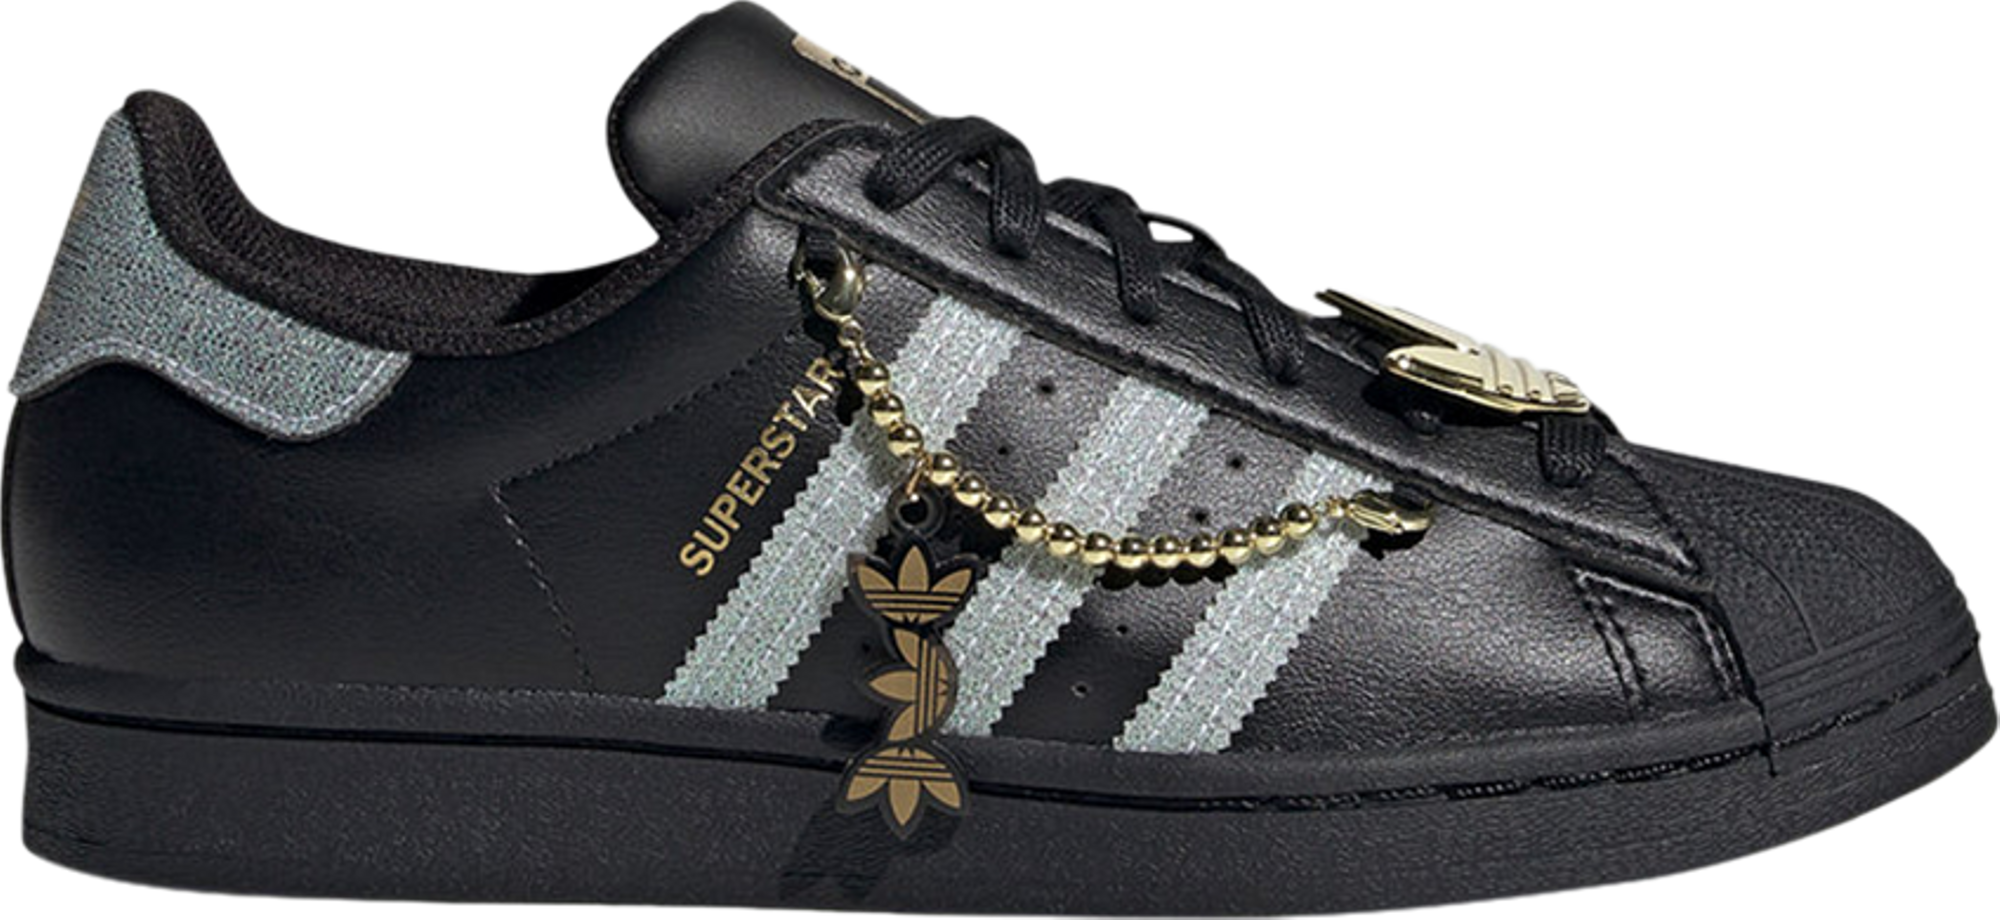 Buy Wmns Superstar 'Sneaker Queen' - GZ8403 | GOAT